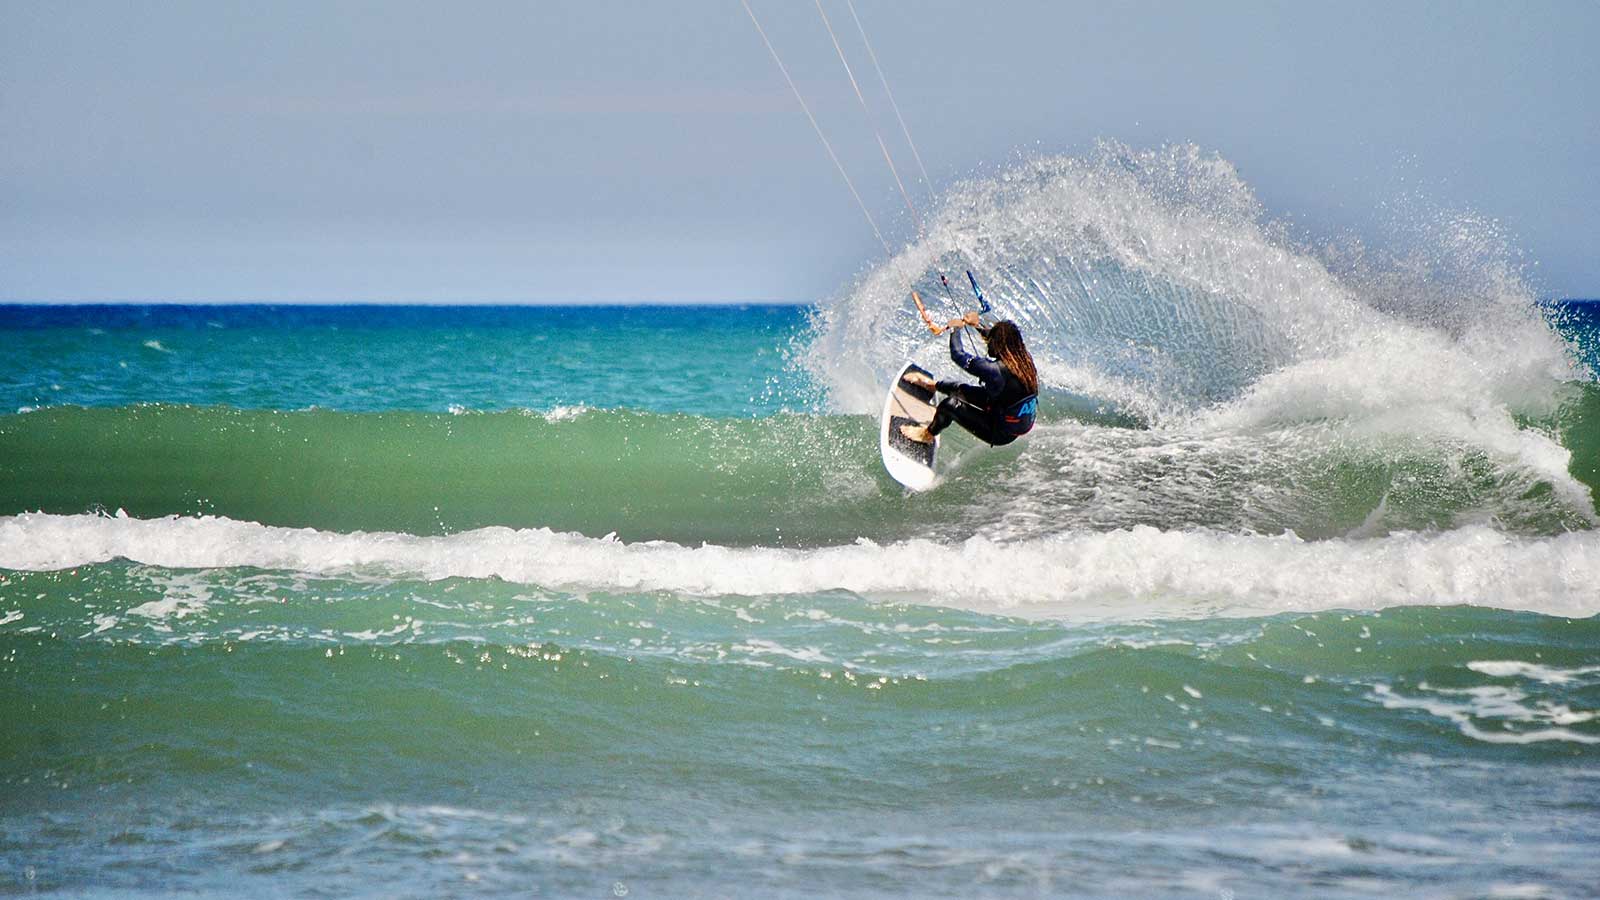 kitesurf sessions in Golf de Roses, Kitesurfer taking a wave